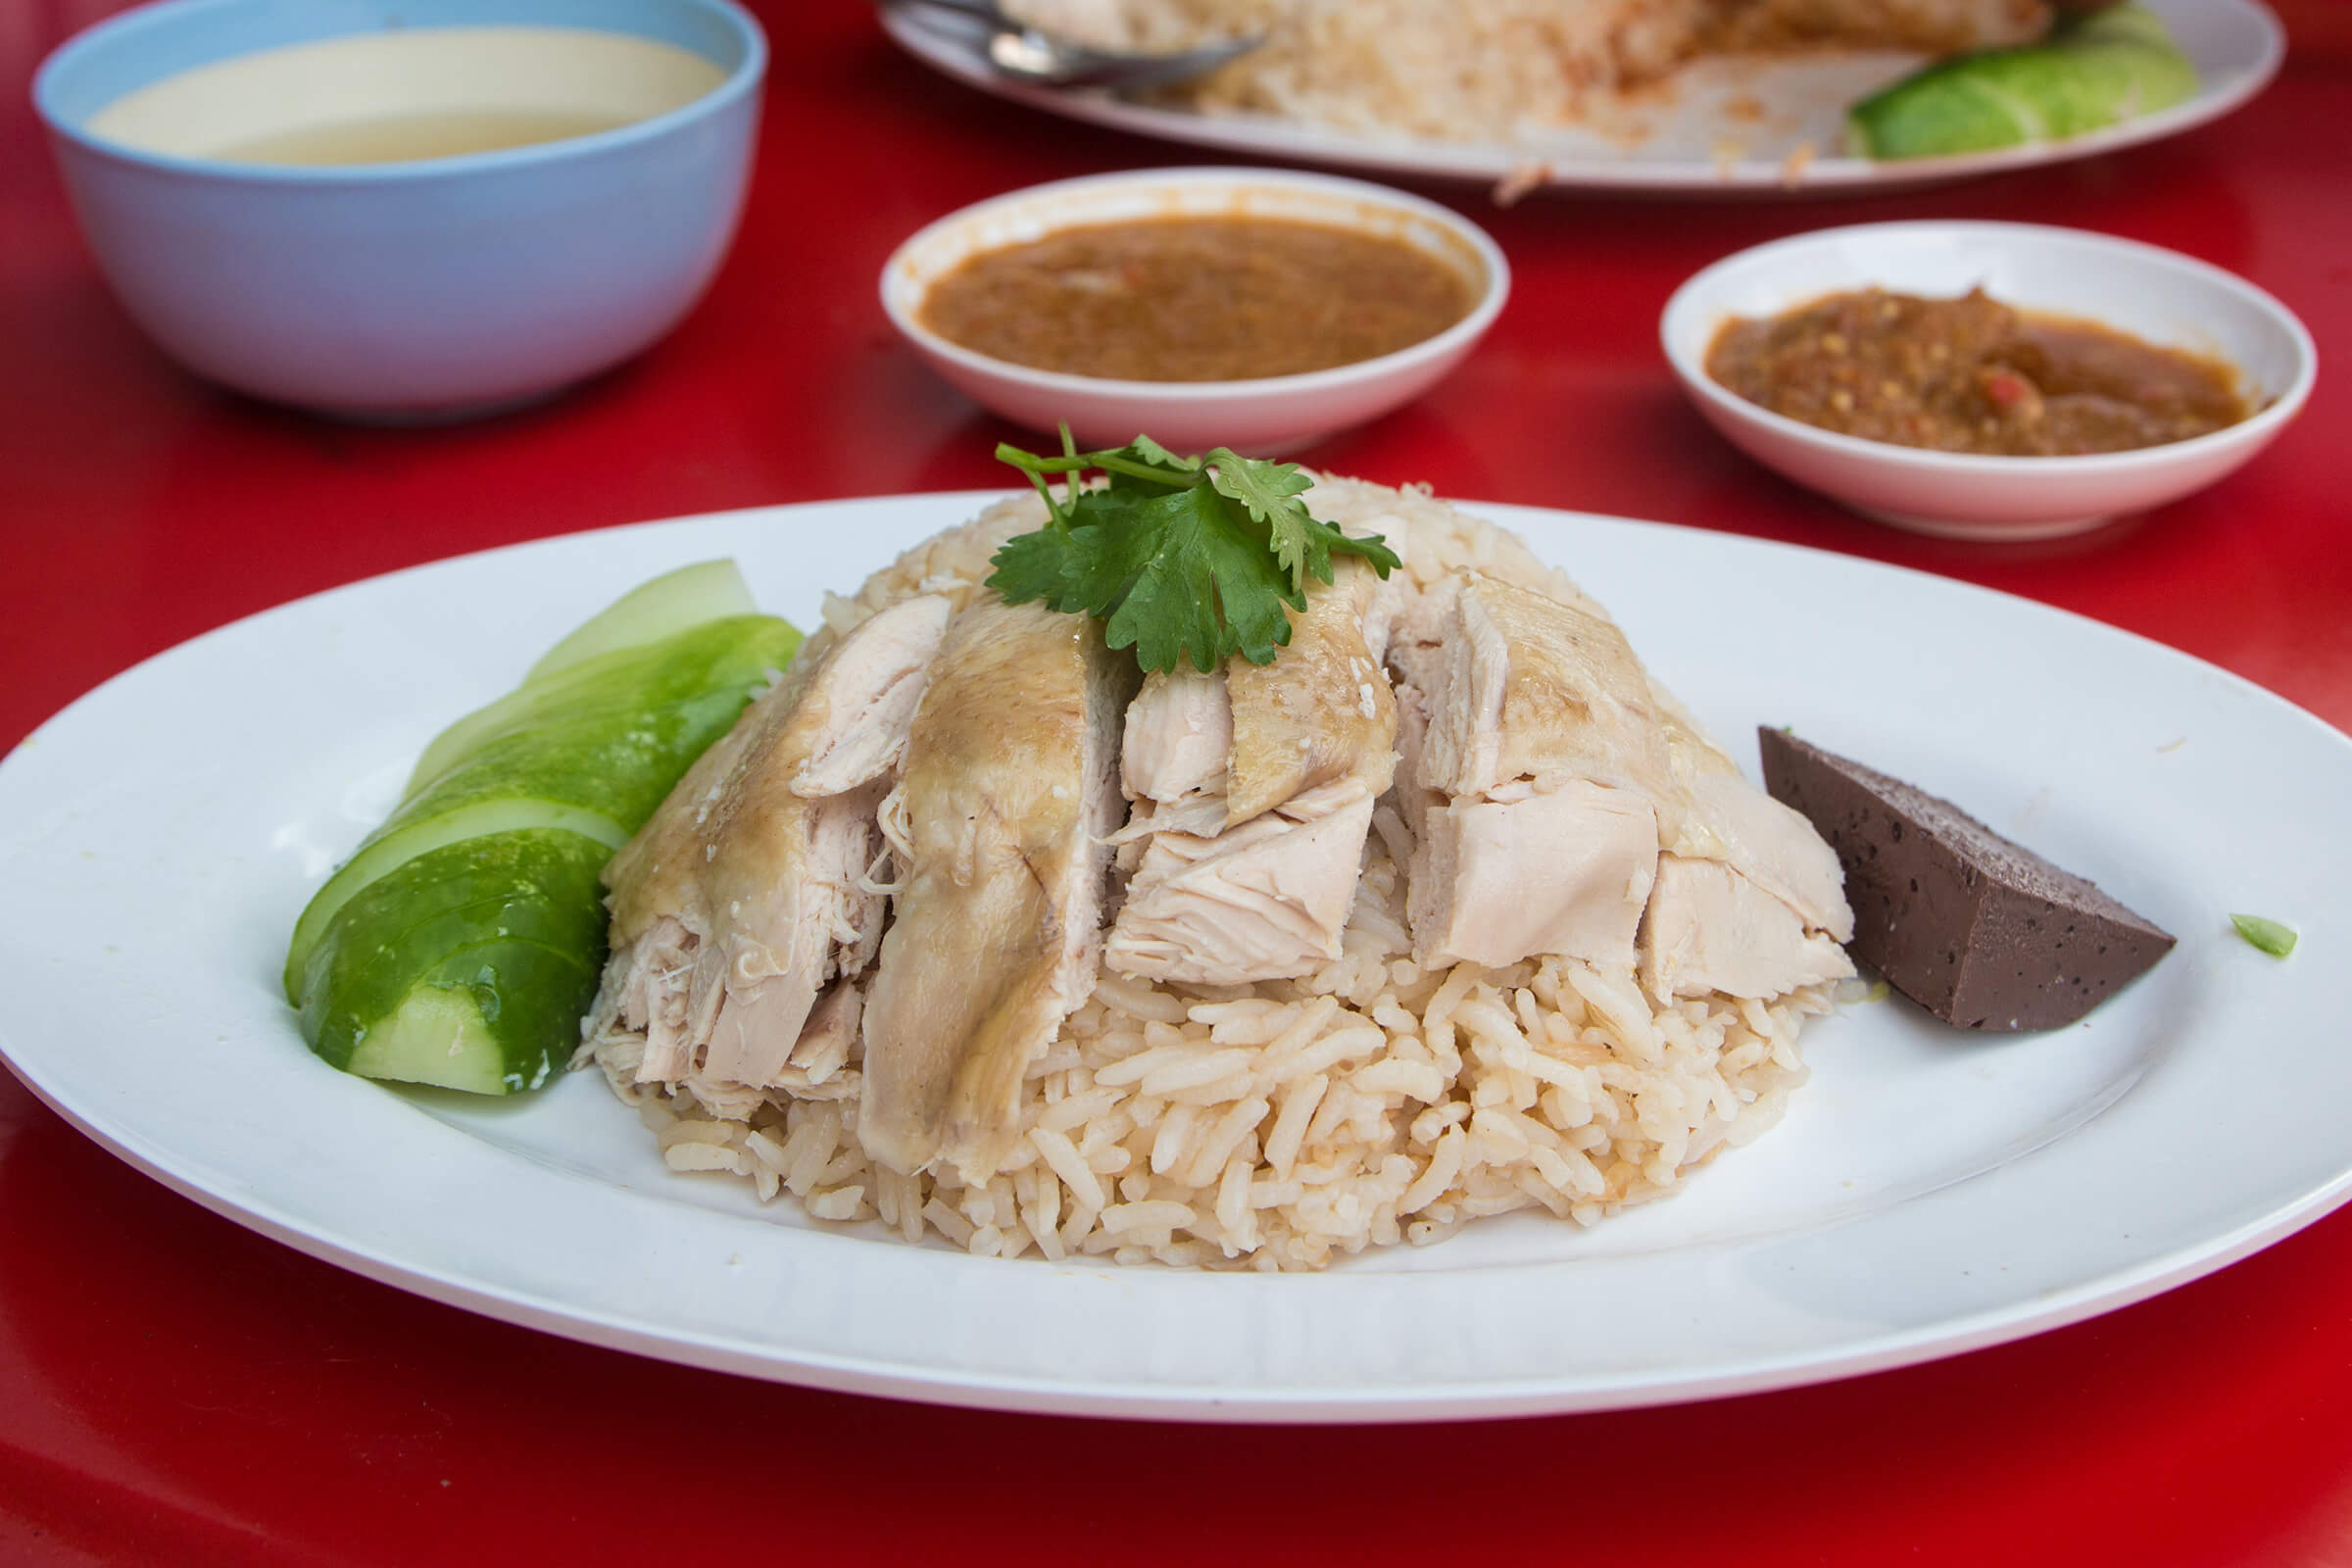 Khao Man Gai thường được ăn bằng tay. Thực khách sẽ xé nhỏ gà thành từng miếng, sau đó chấm vào nước sốt và ăn kèm với cơm. Dưa leo, cà chua và gừng chua cũng được ăn kèm để tăng thêm hương vị cho món ăn.